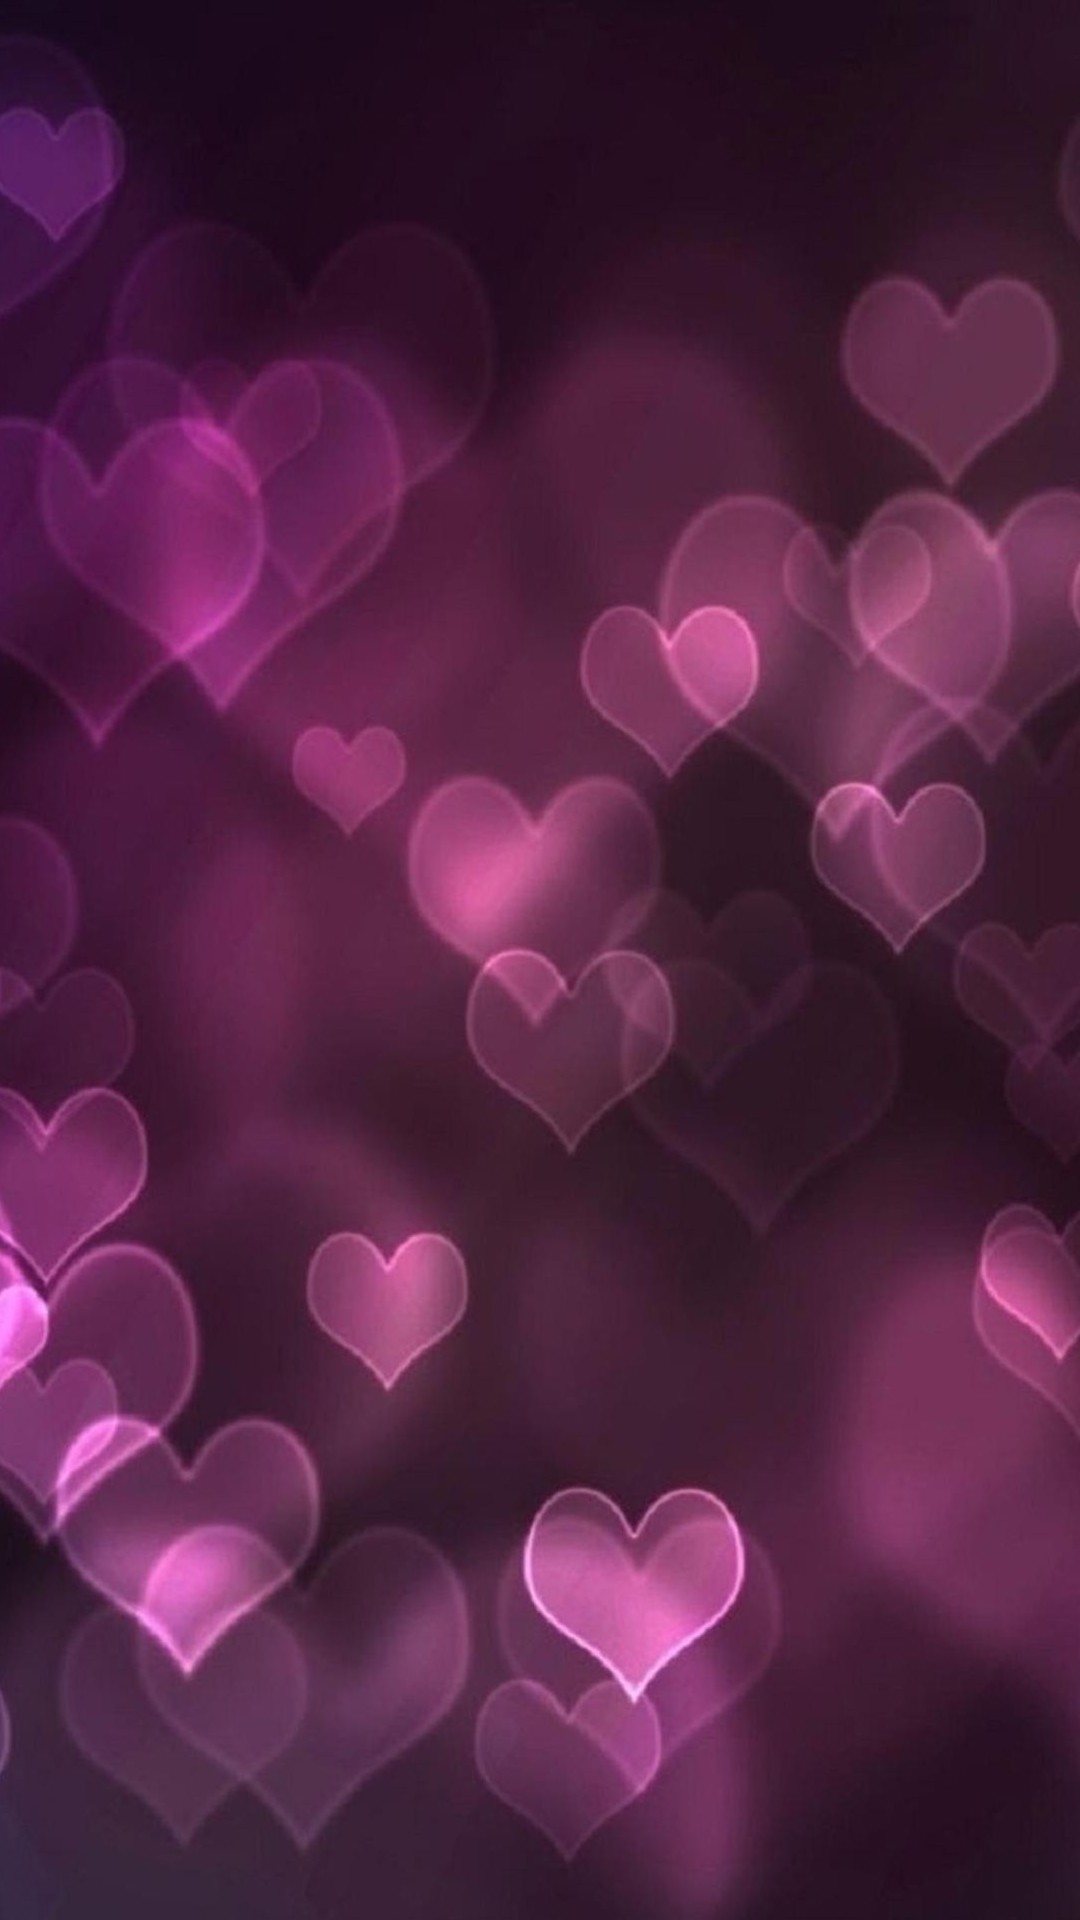 クールなピンクの壁紙,心臓,バイオレット,紫の,ピンク,愛